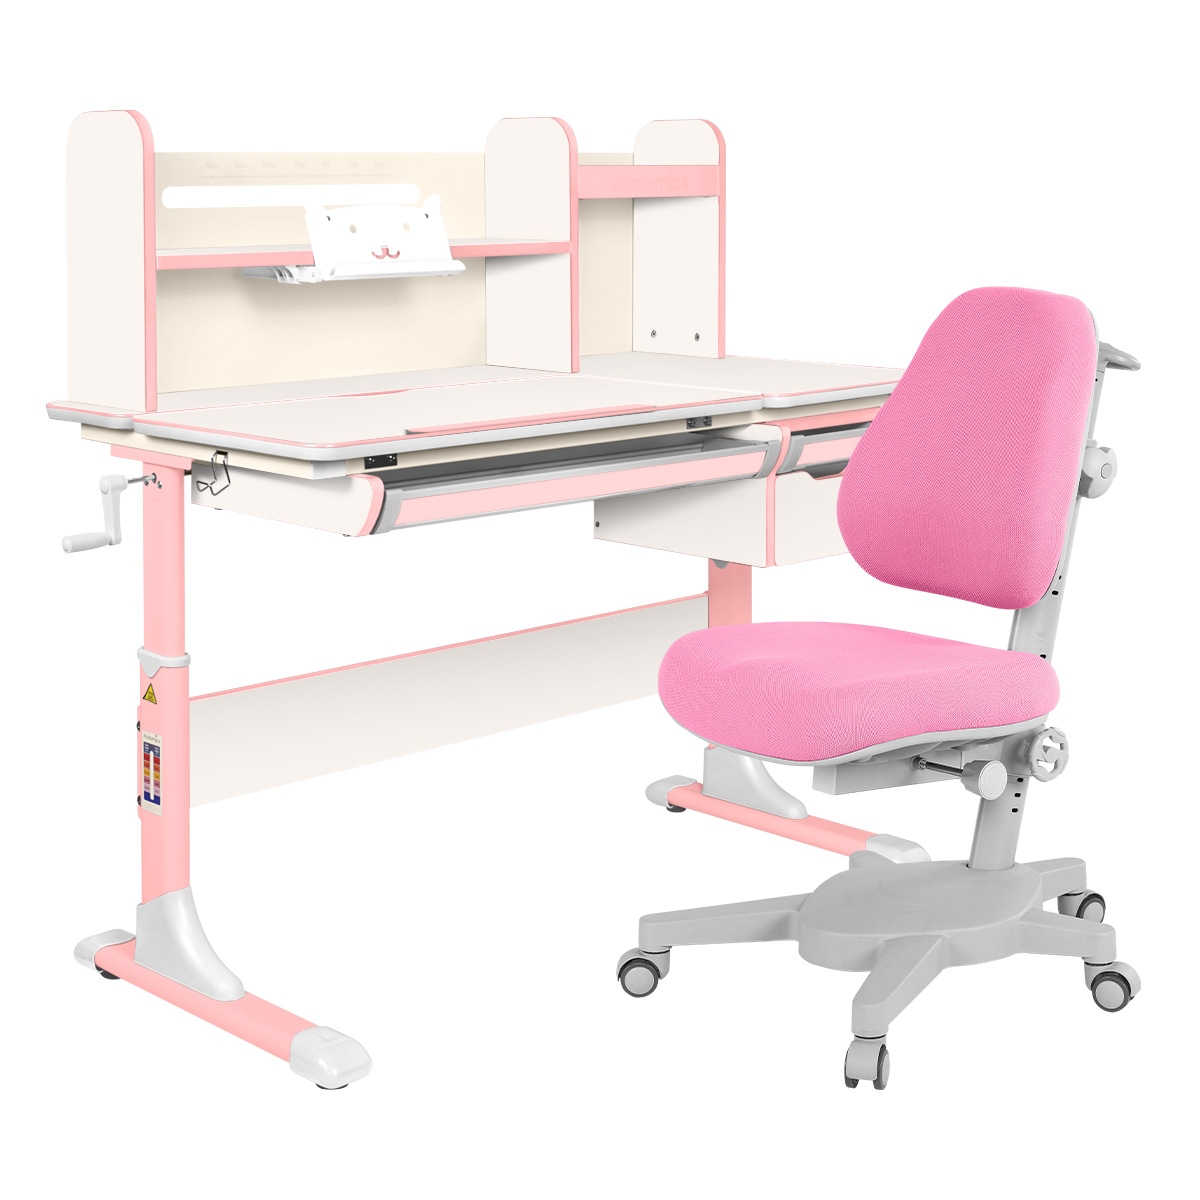 Комплект Anatomica парта Genius белый/розовый с розовым креслом Armata